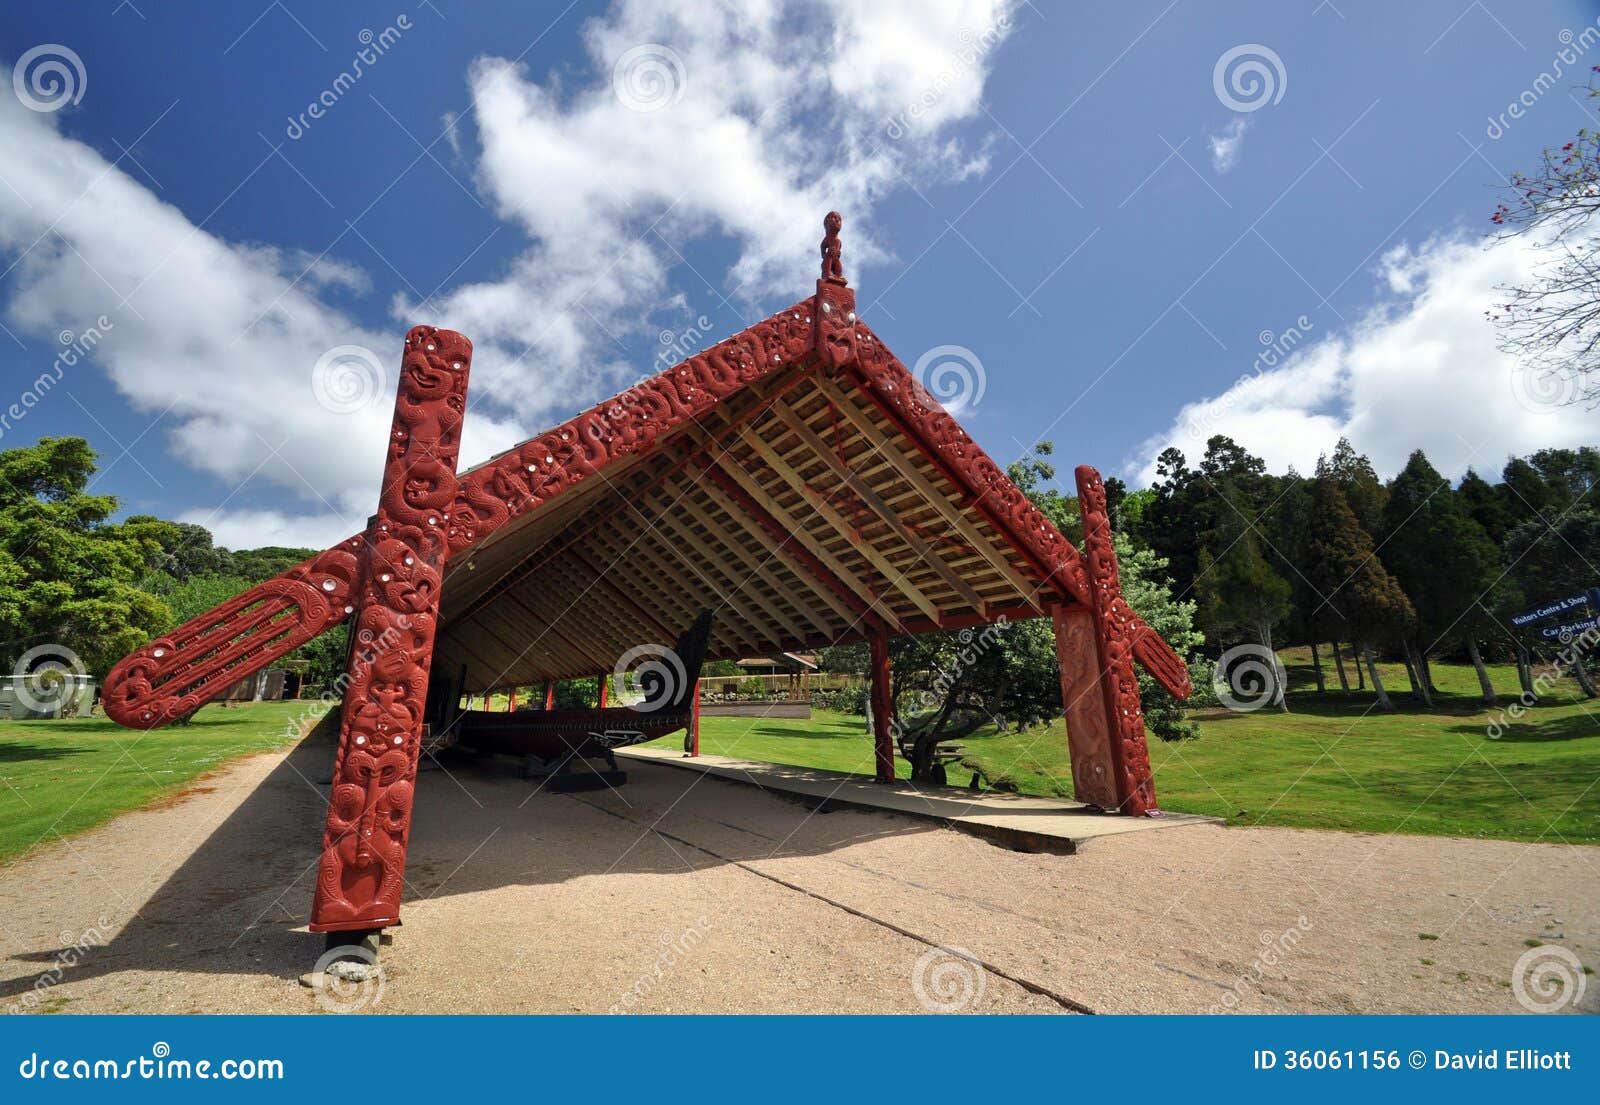  Treaty Grounds, New Zealand Royalty Free Stock Image - Image: 36061156